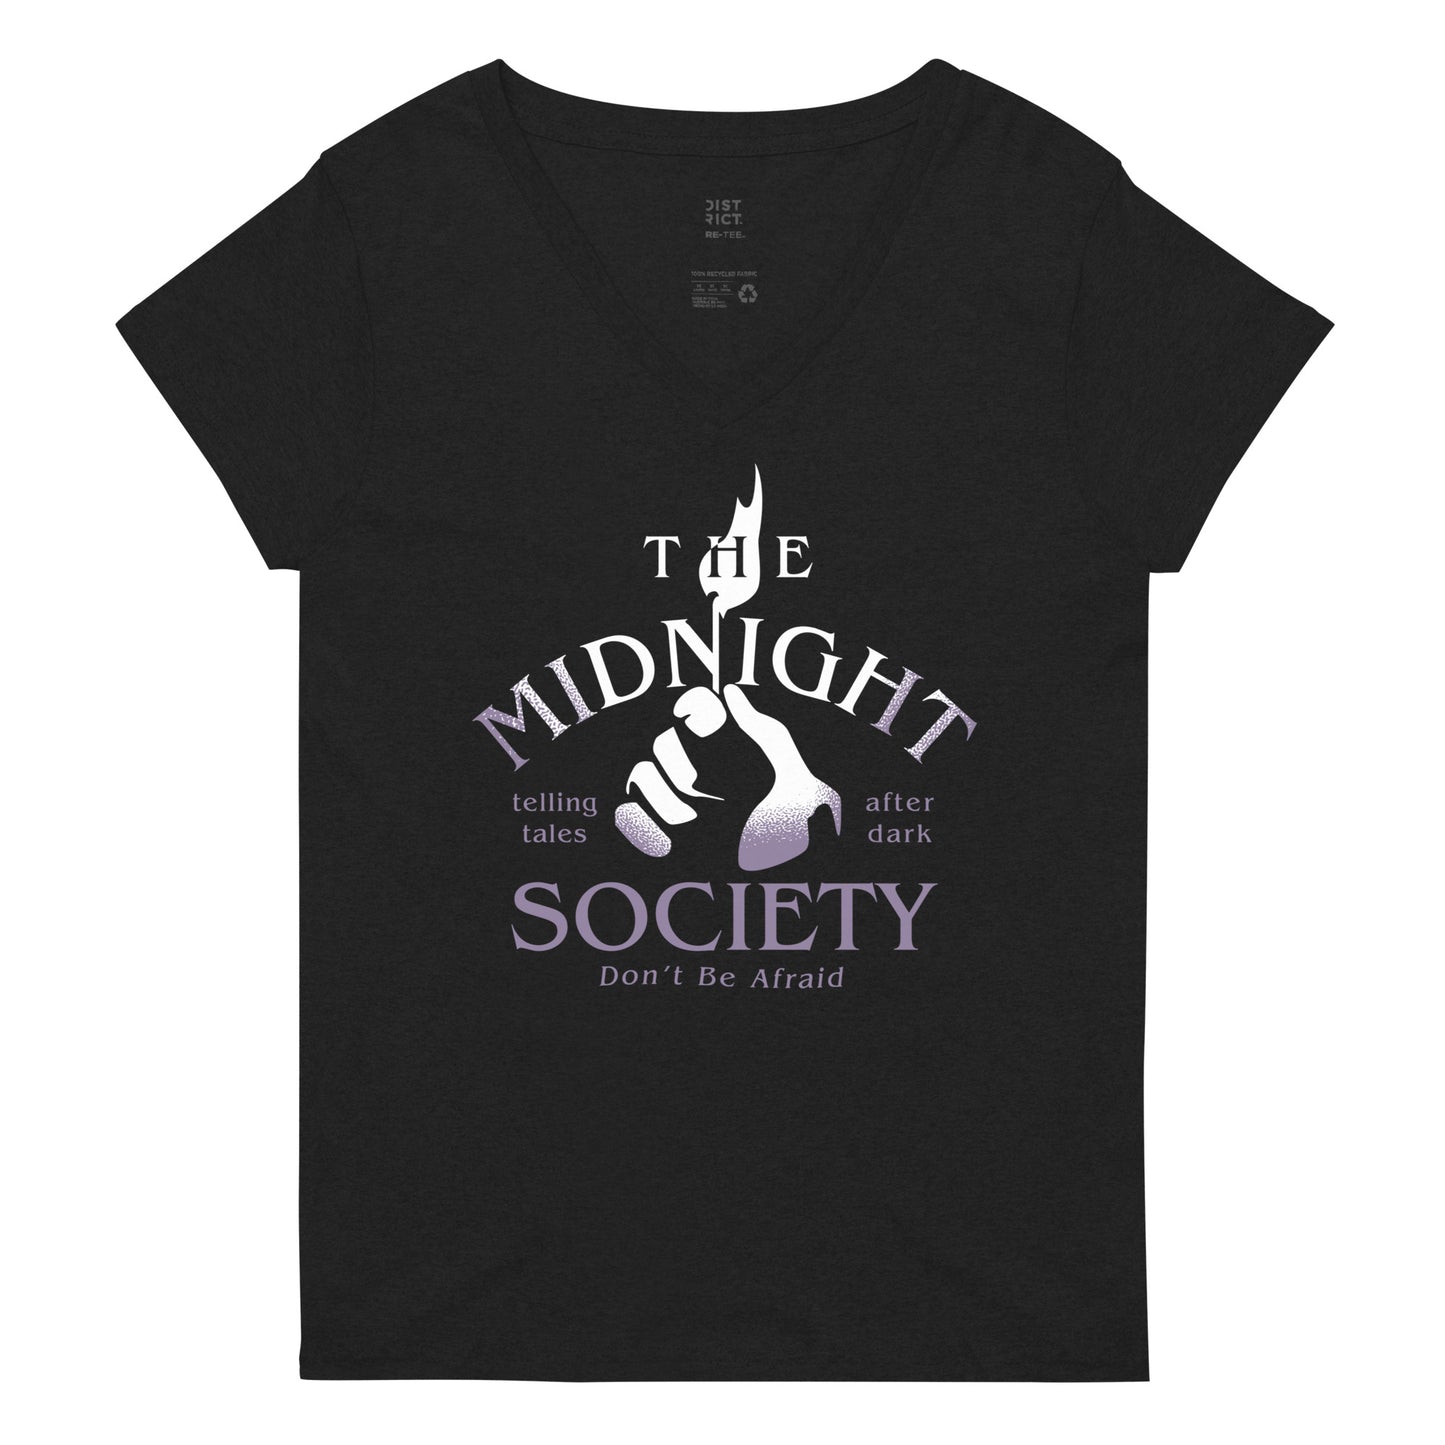 The Midnight Society Women's V-Neck Tee